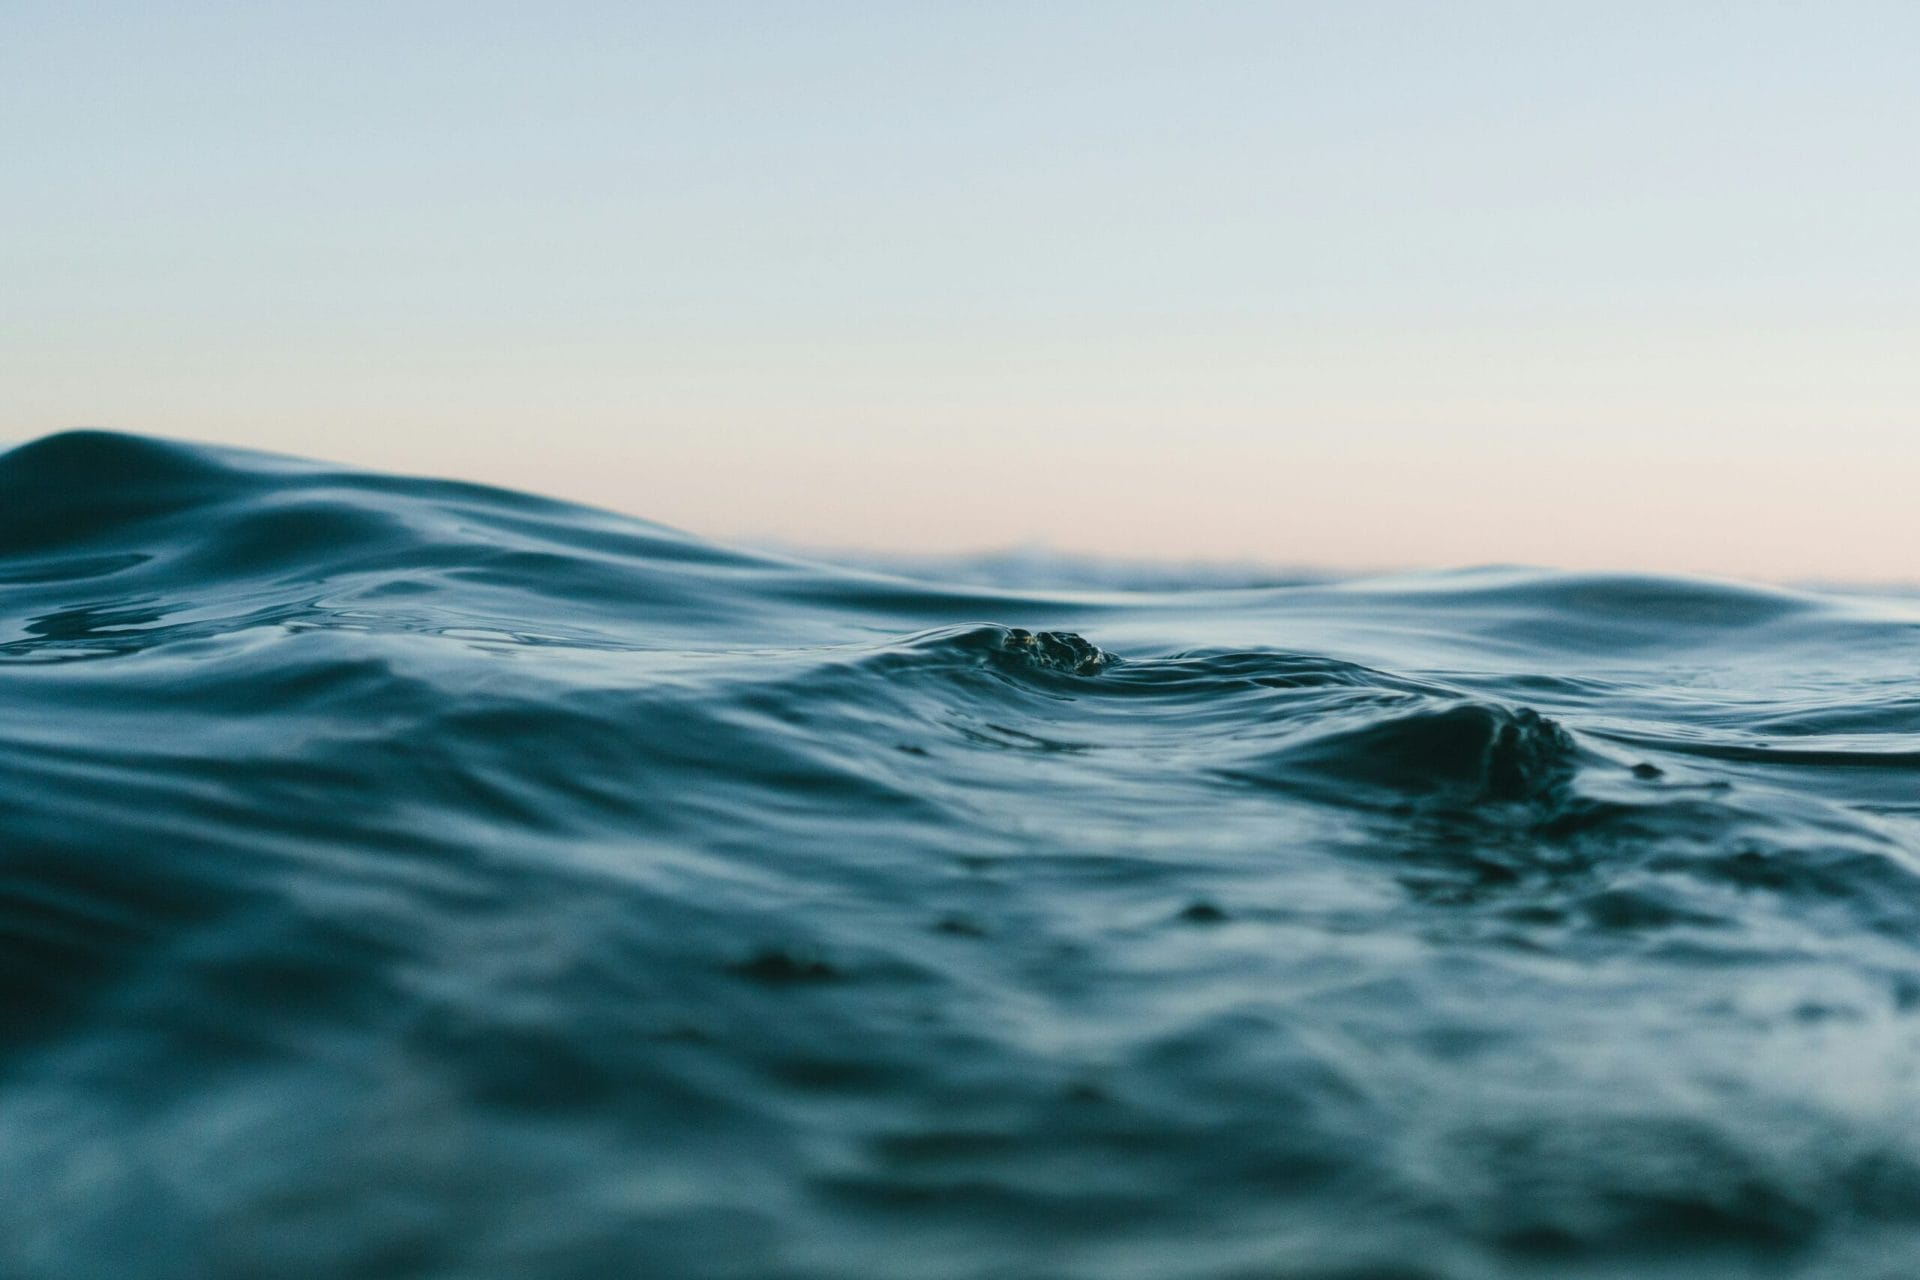 A La Manche-csatorna halálos átkelése: Egy hétéves kislány vízbe fulladt a szörnyű tragédiában a családjával együtt.